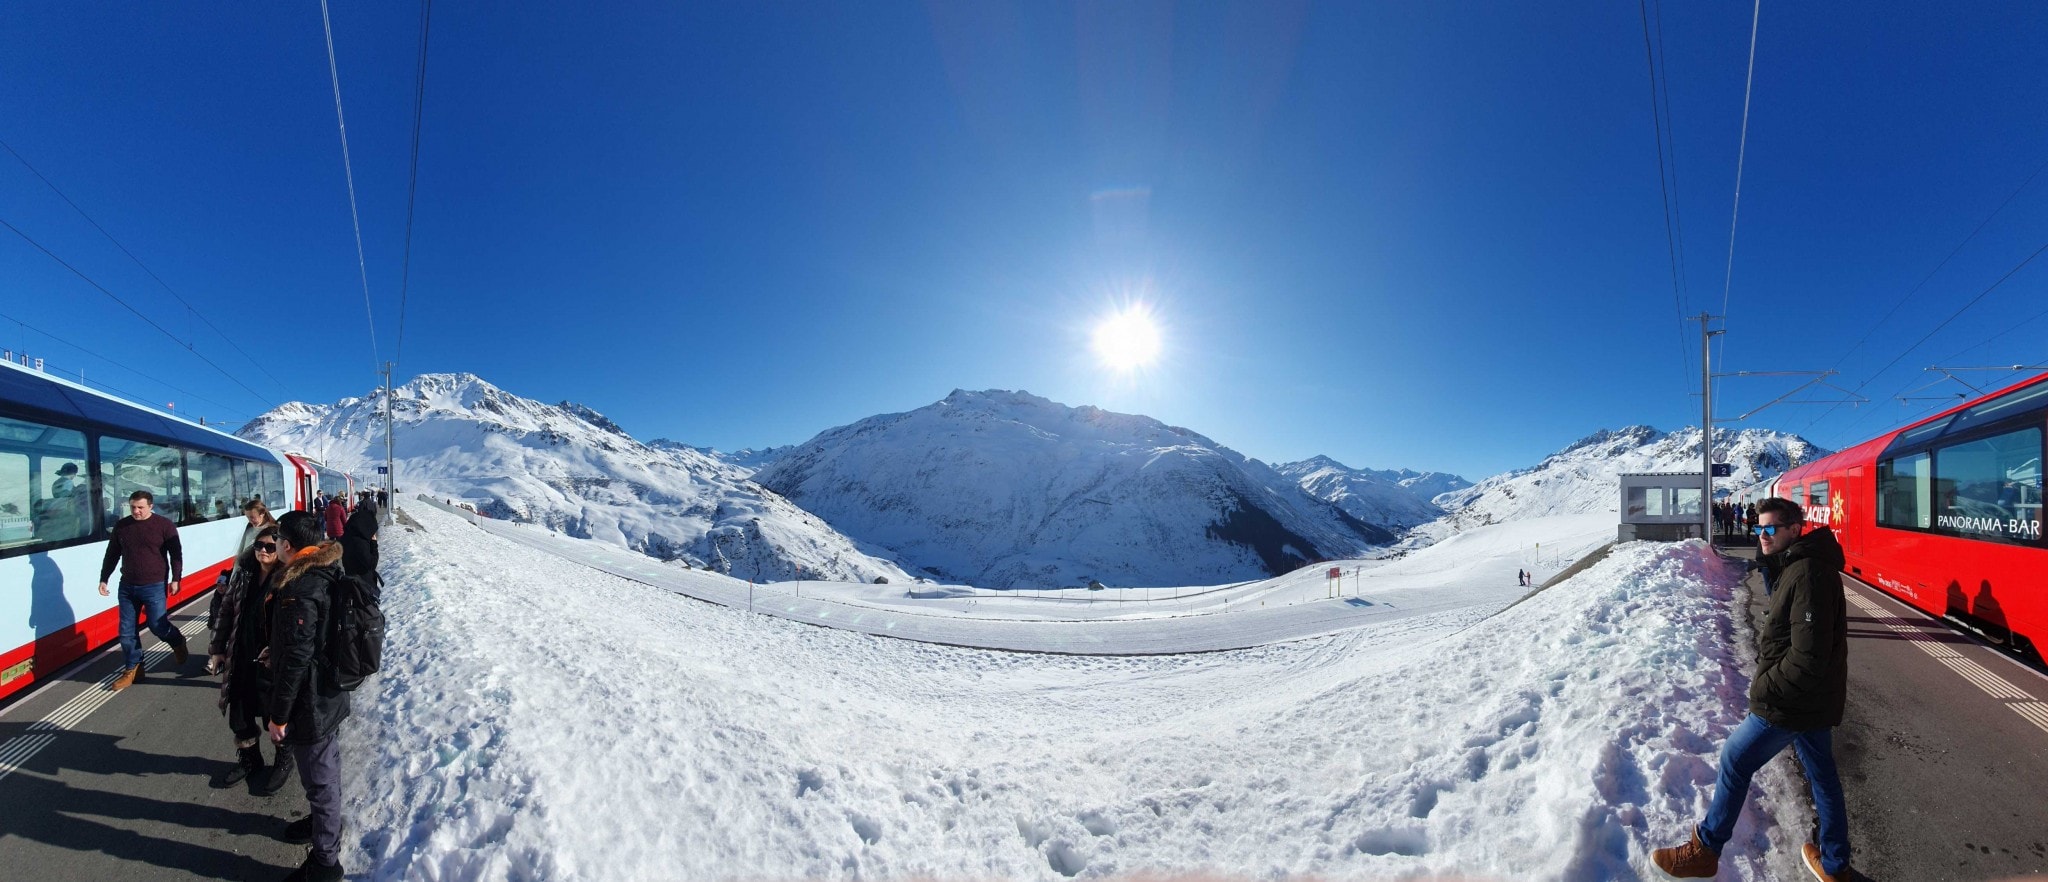 Panorama Foto vom Zug, Menschen und Aussicht auf Sonne, Schnee und Berge